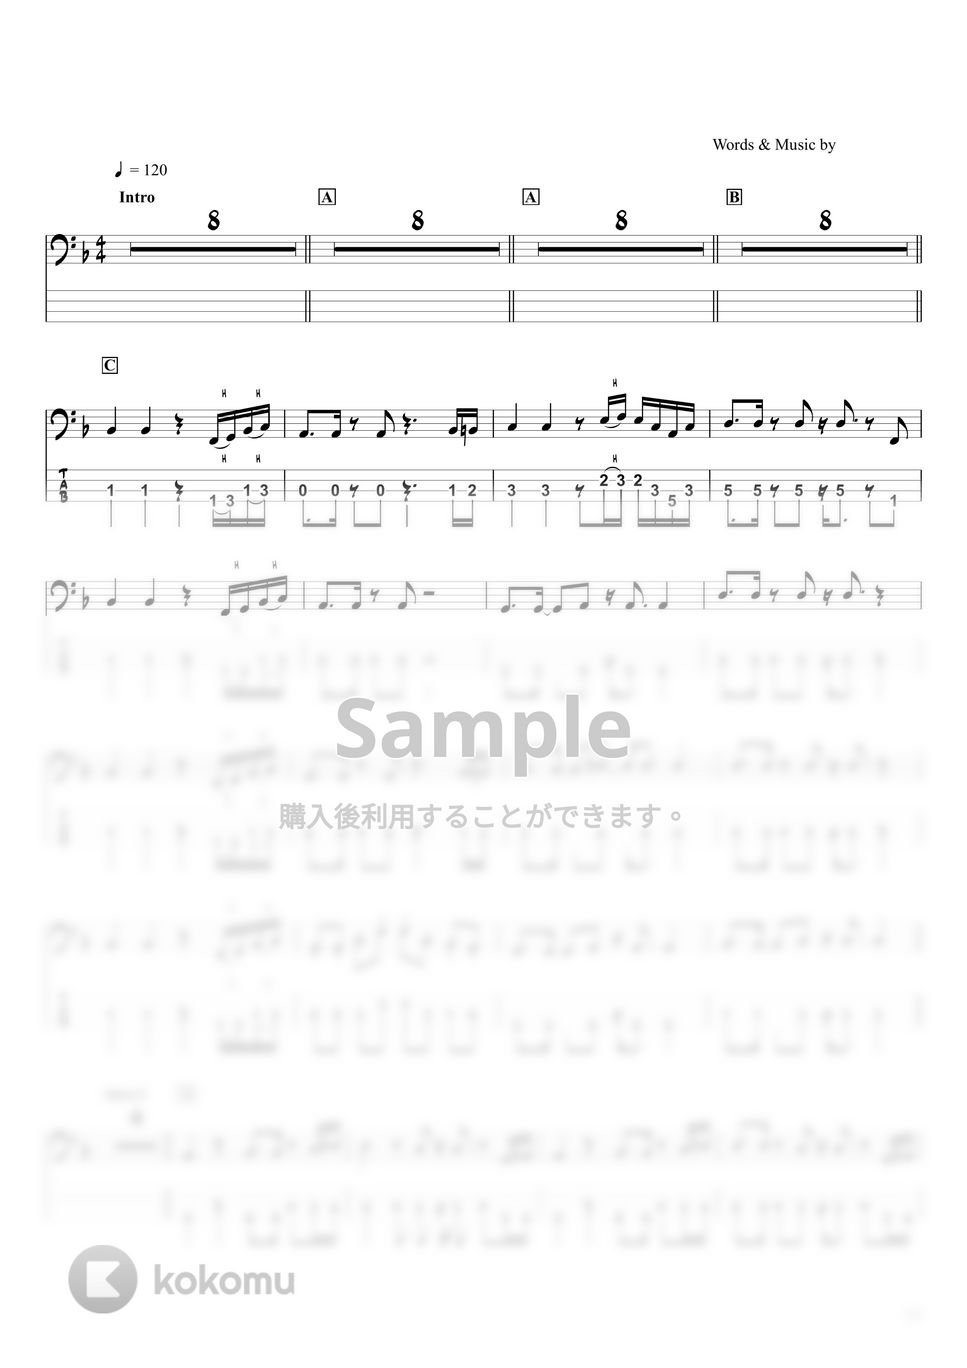 BUMP PF CHICKEN - クロノスタシス (ベースTAB譜☆4弦ベース対応) by swbass